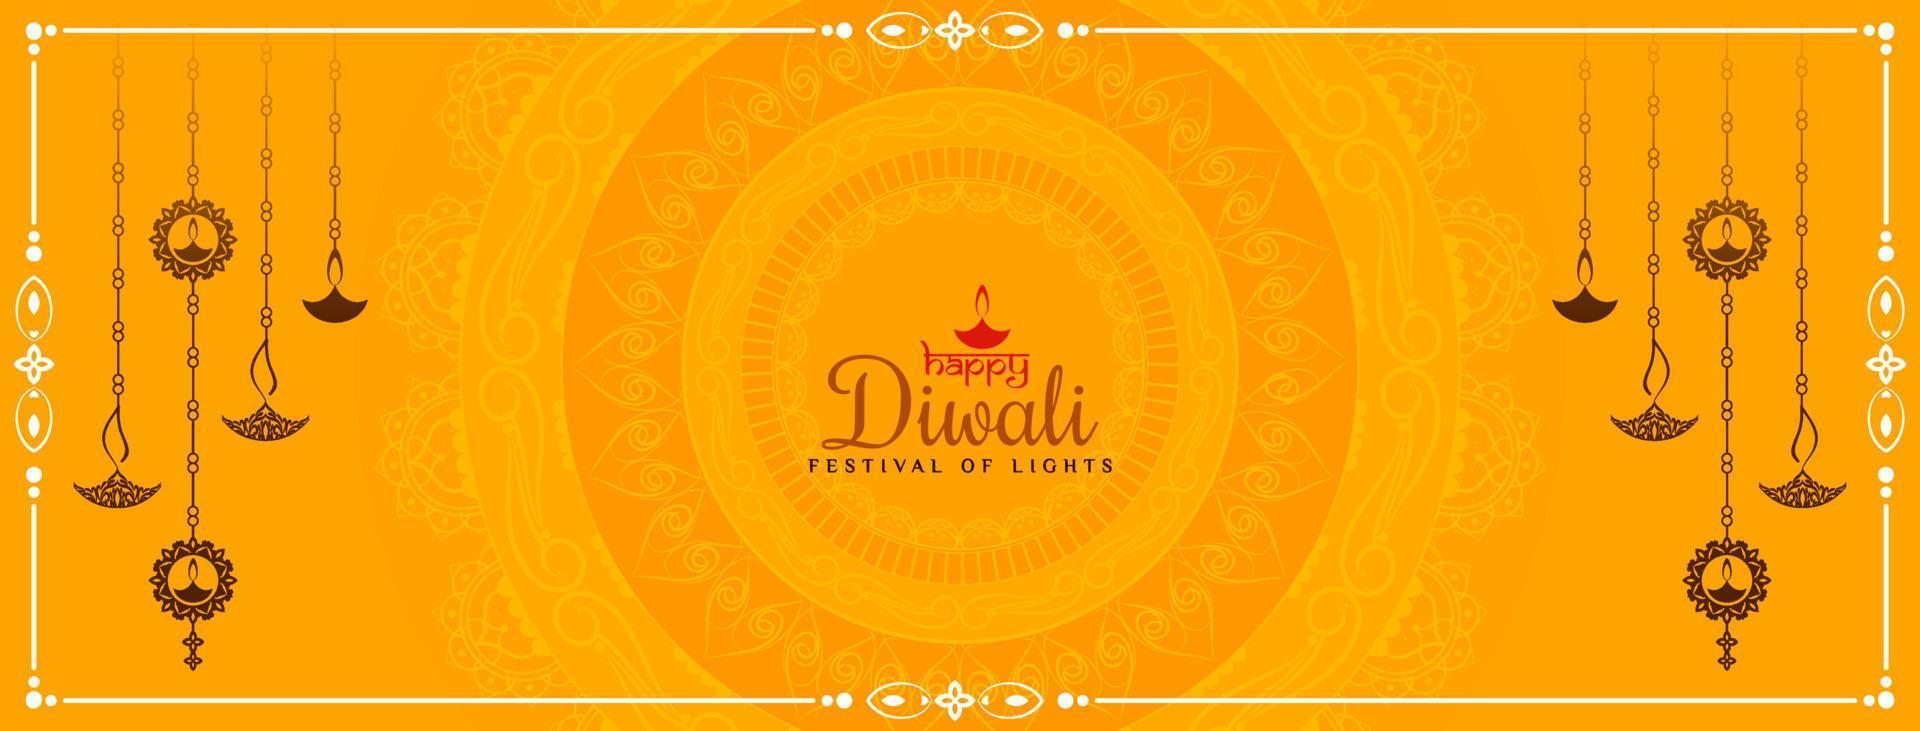 feliz festival de diwali banner amarillo con diseño de lámparas colgantes vector